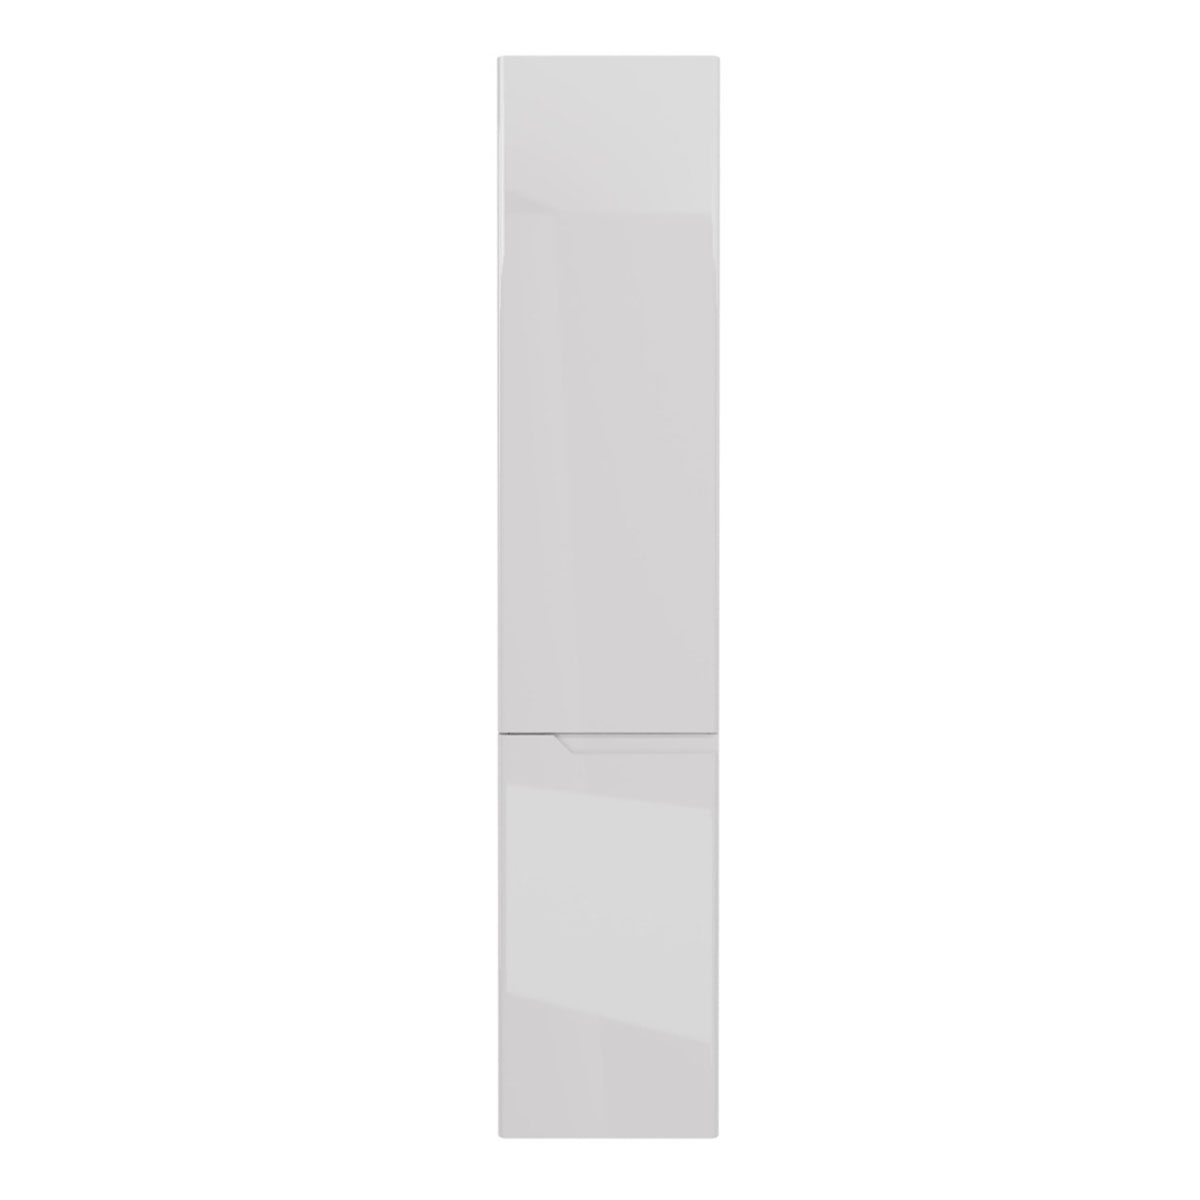 Пенал Lemark MIANO 35 см подвесной/напольный, правый, 2-х дверный, цвет корпуса, фасада: Белый глянец